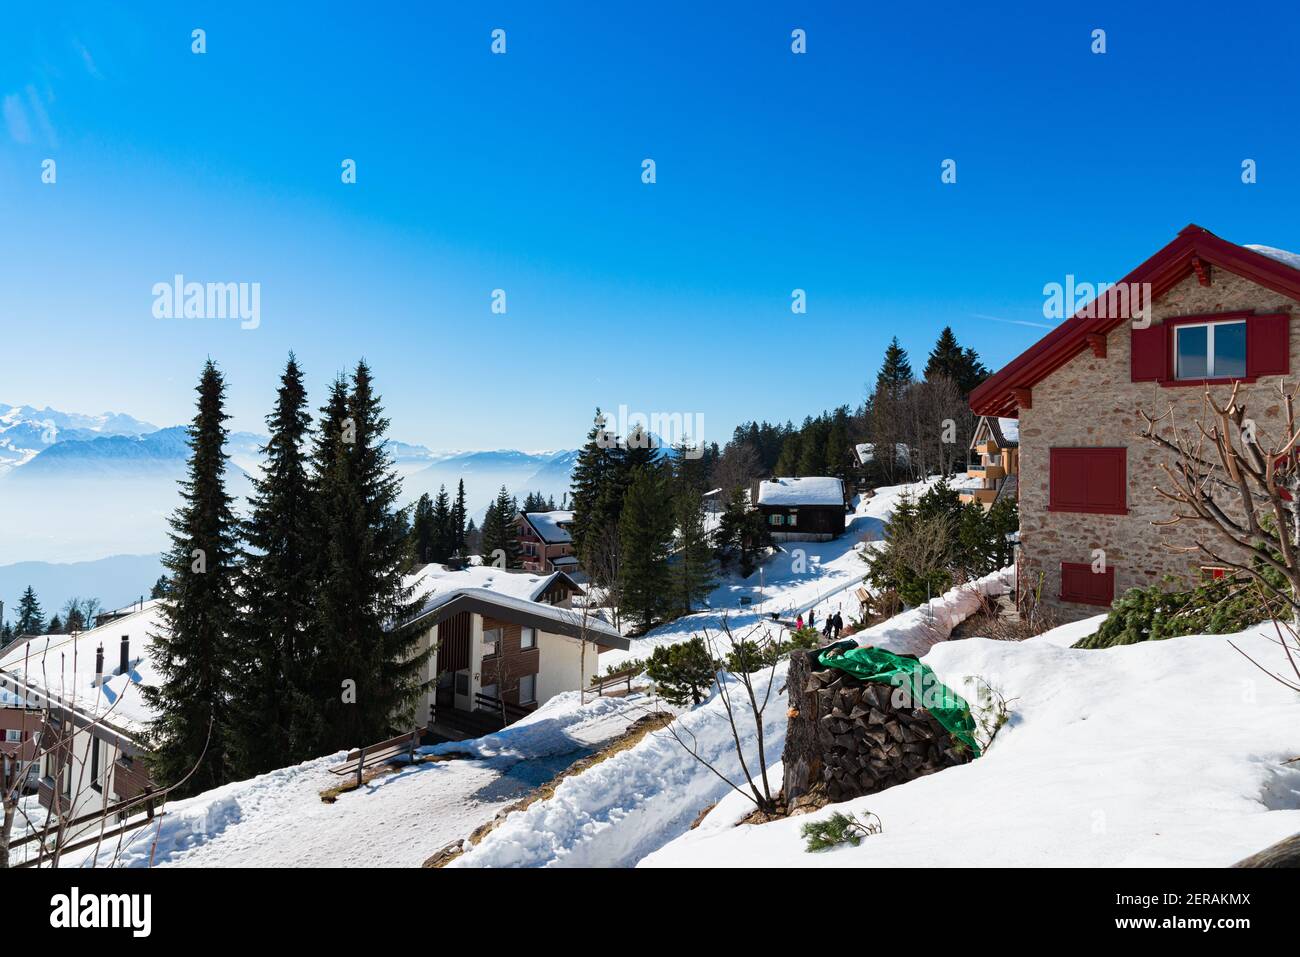 Vista panoramica unica dello skyline alpino del resort Rigi. Chalet innevati, cabine di alloggio in legno, alberghi, Alpi svizzere ghiacciate, cielo blu. Monte Rigi, Weggis, Luc Foto Stock